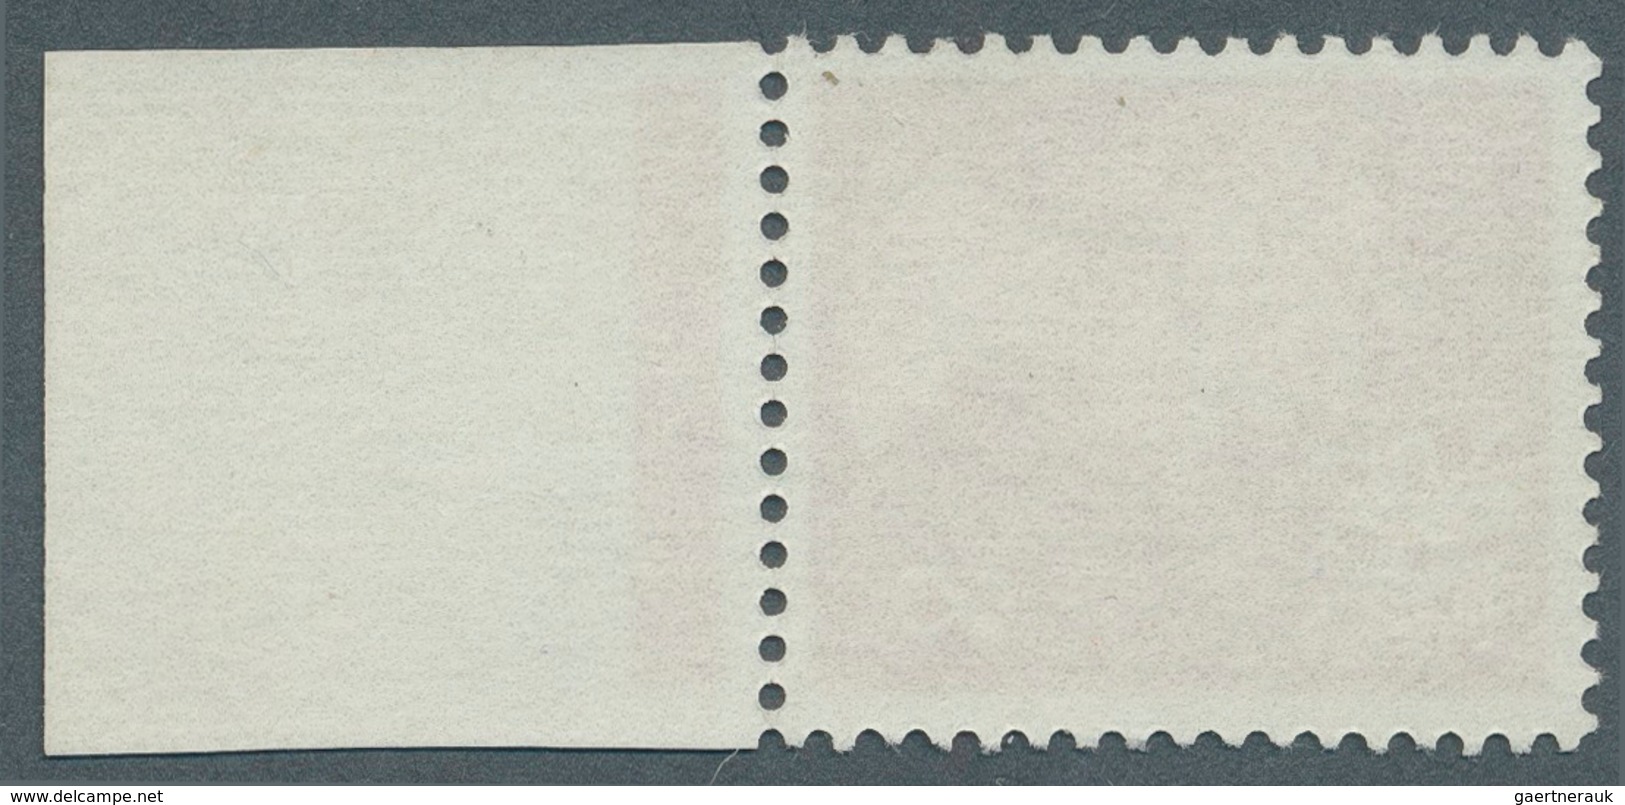 Großbritannien - Regionalmarken: Wales: 1974, 8 P. Rosine With Lower Margin, Showing Variety "phosph - Wales